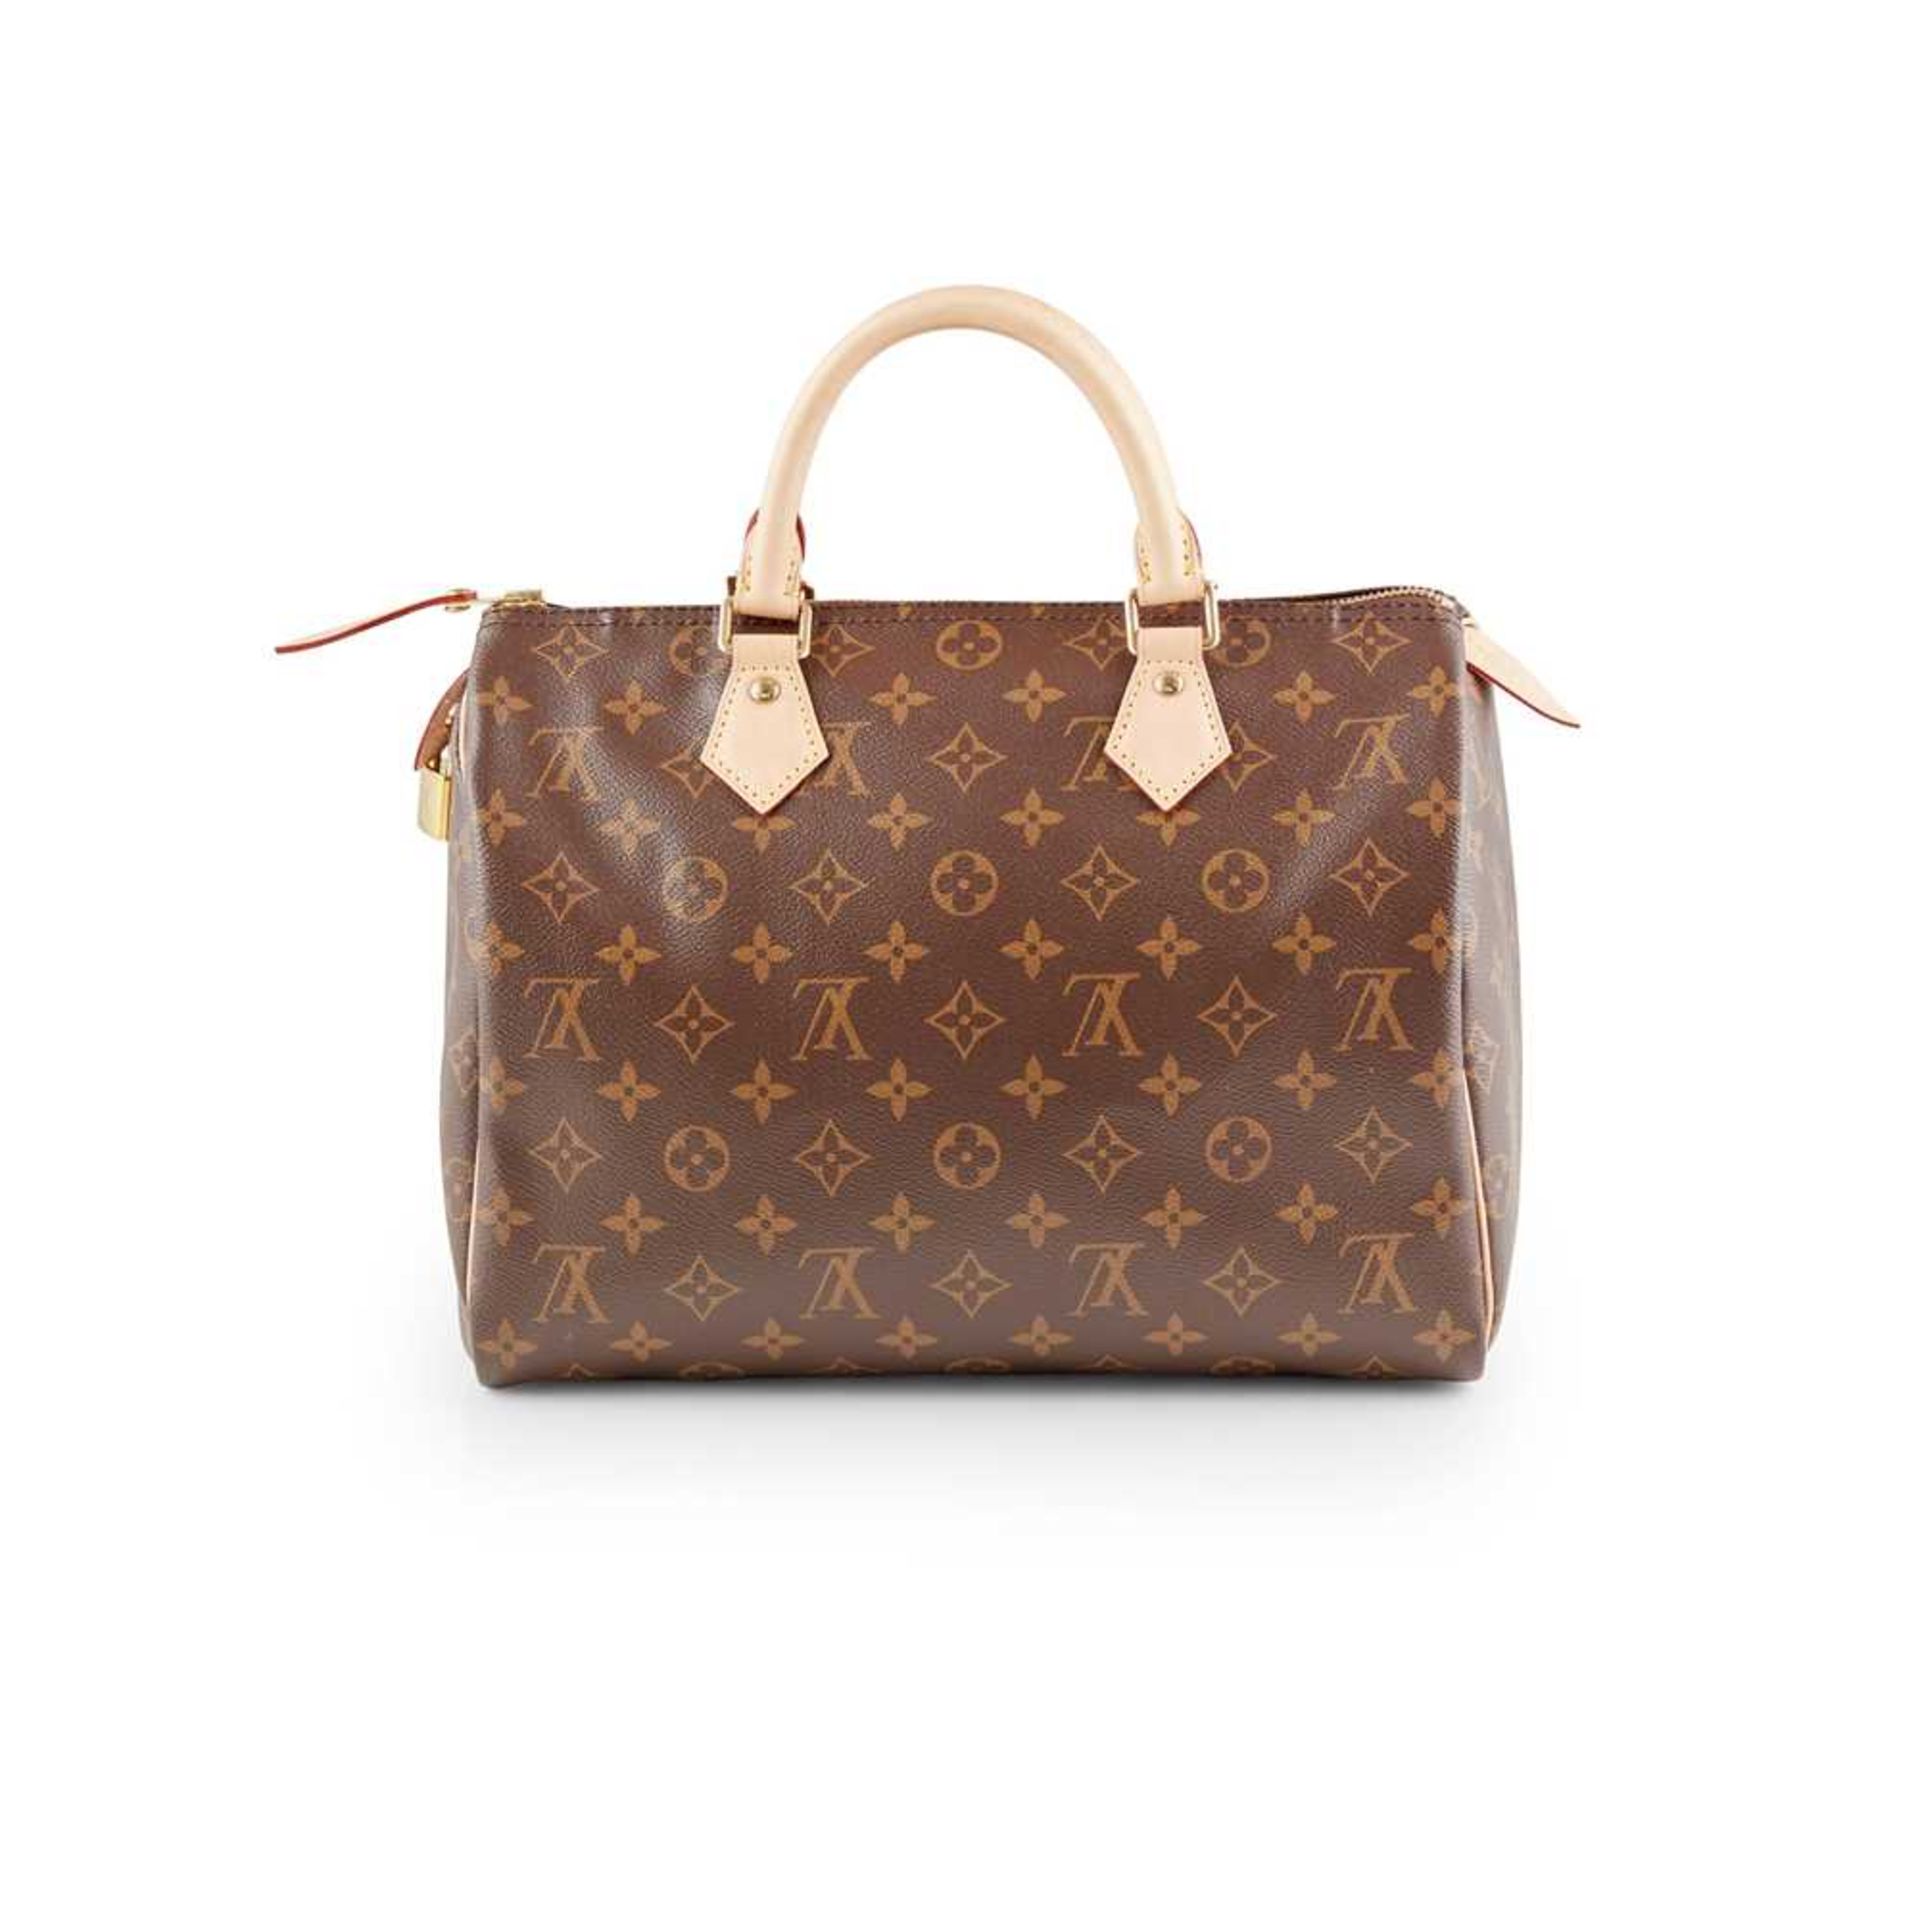 A Speedy 30 handbag, Louis Vuitton - Image 2 of 4